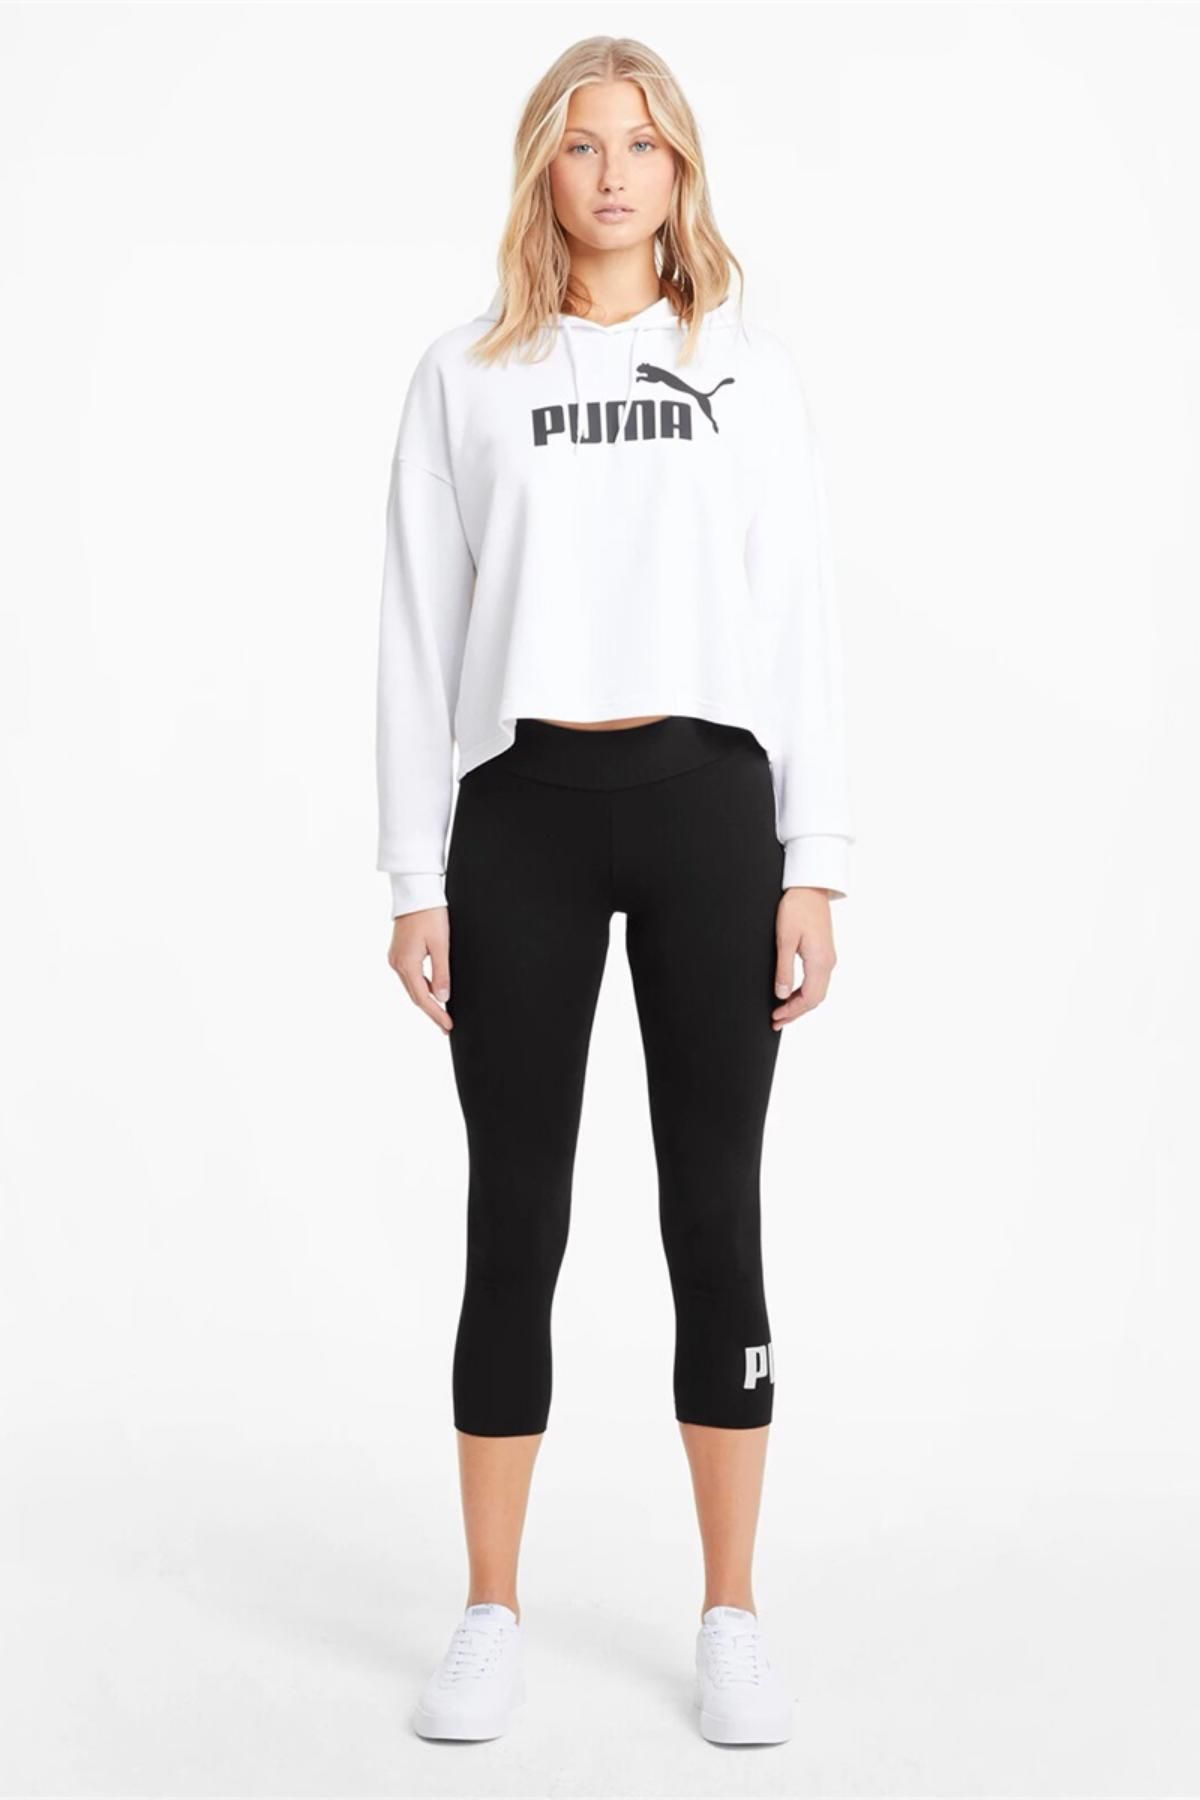 Puma Kadın Siyah Ess 3/4 Logo Leggings Günlük Stil Tayt